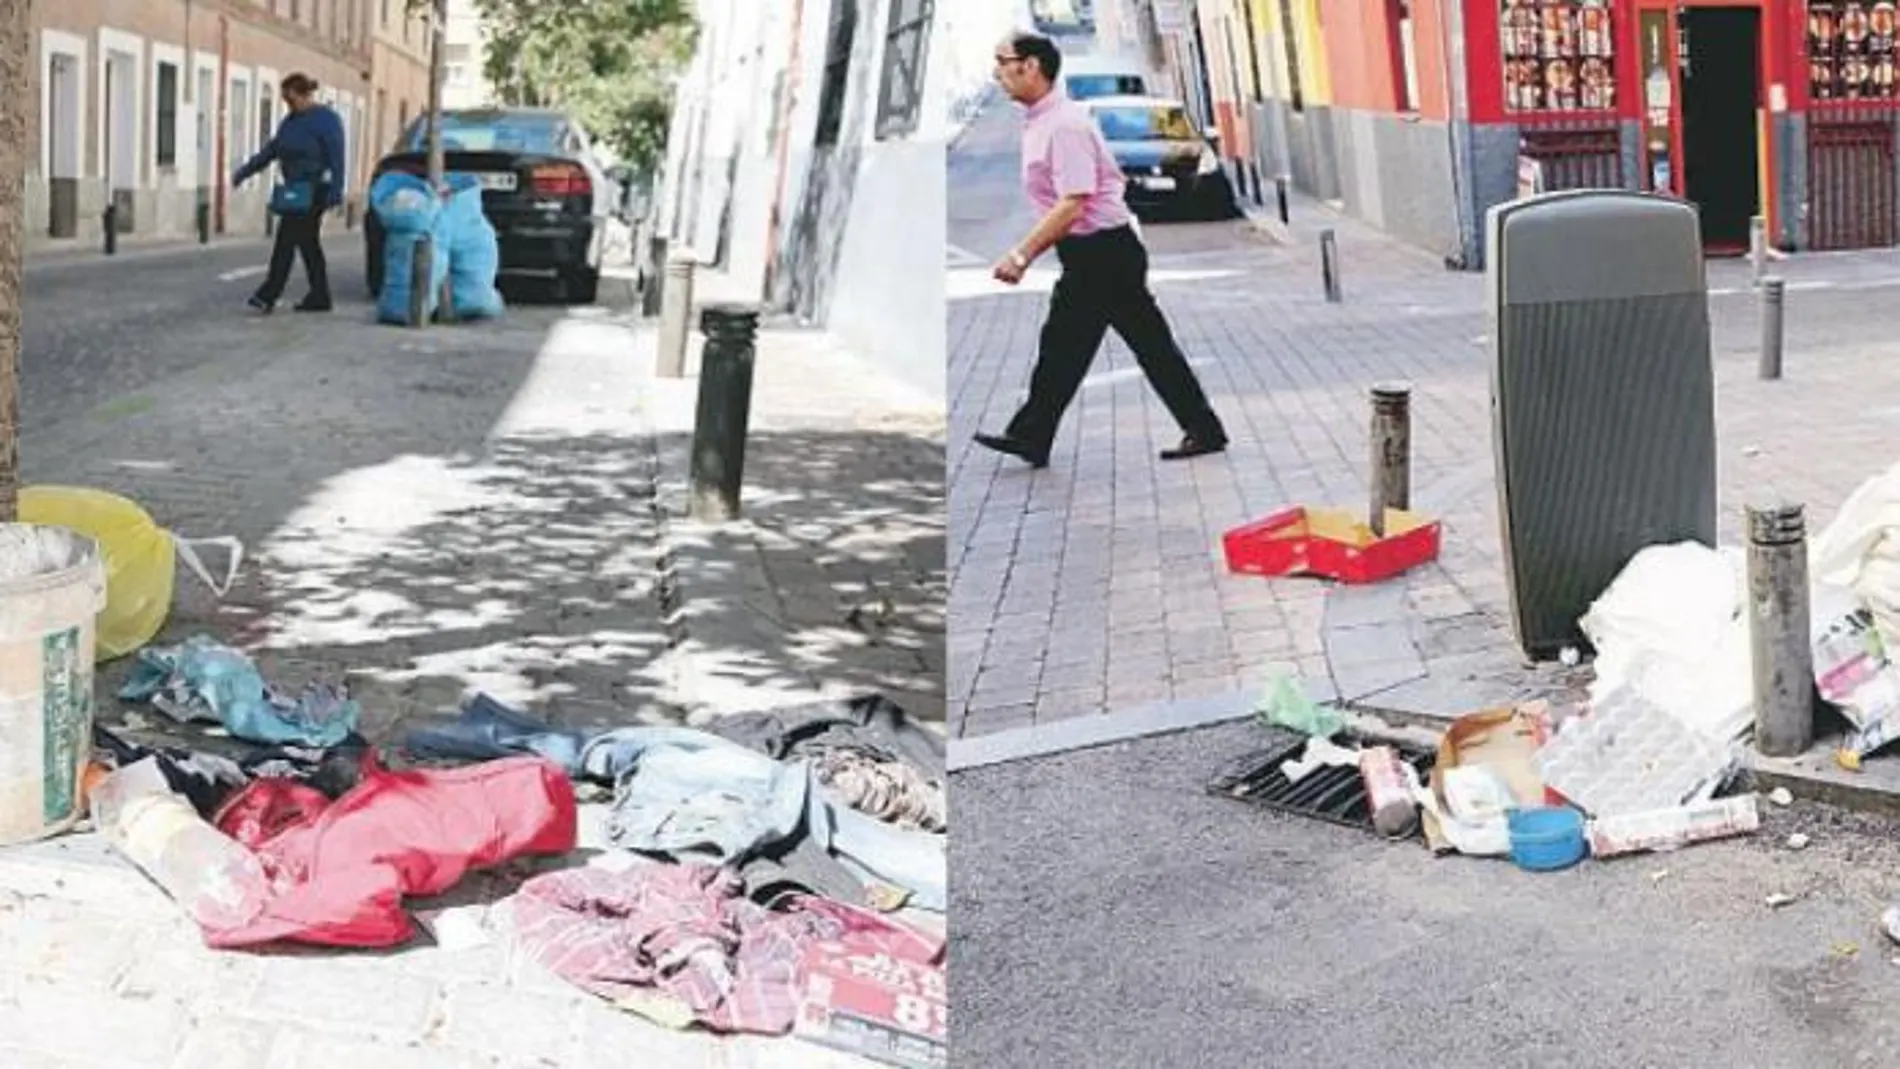 Las limpiezas a fondo de los barrios, sin éxito. Ya se han realizado en 18 zonas de Madrid, pero según admitió ayer la alcaldesa no han tenido el resultado esperado, porque a los «cuatro días» han vuelto a ensuciarse.